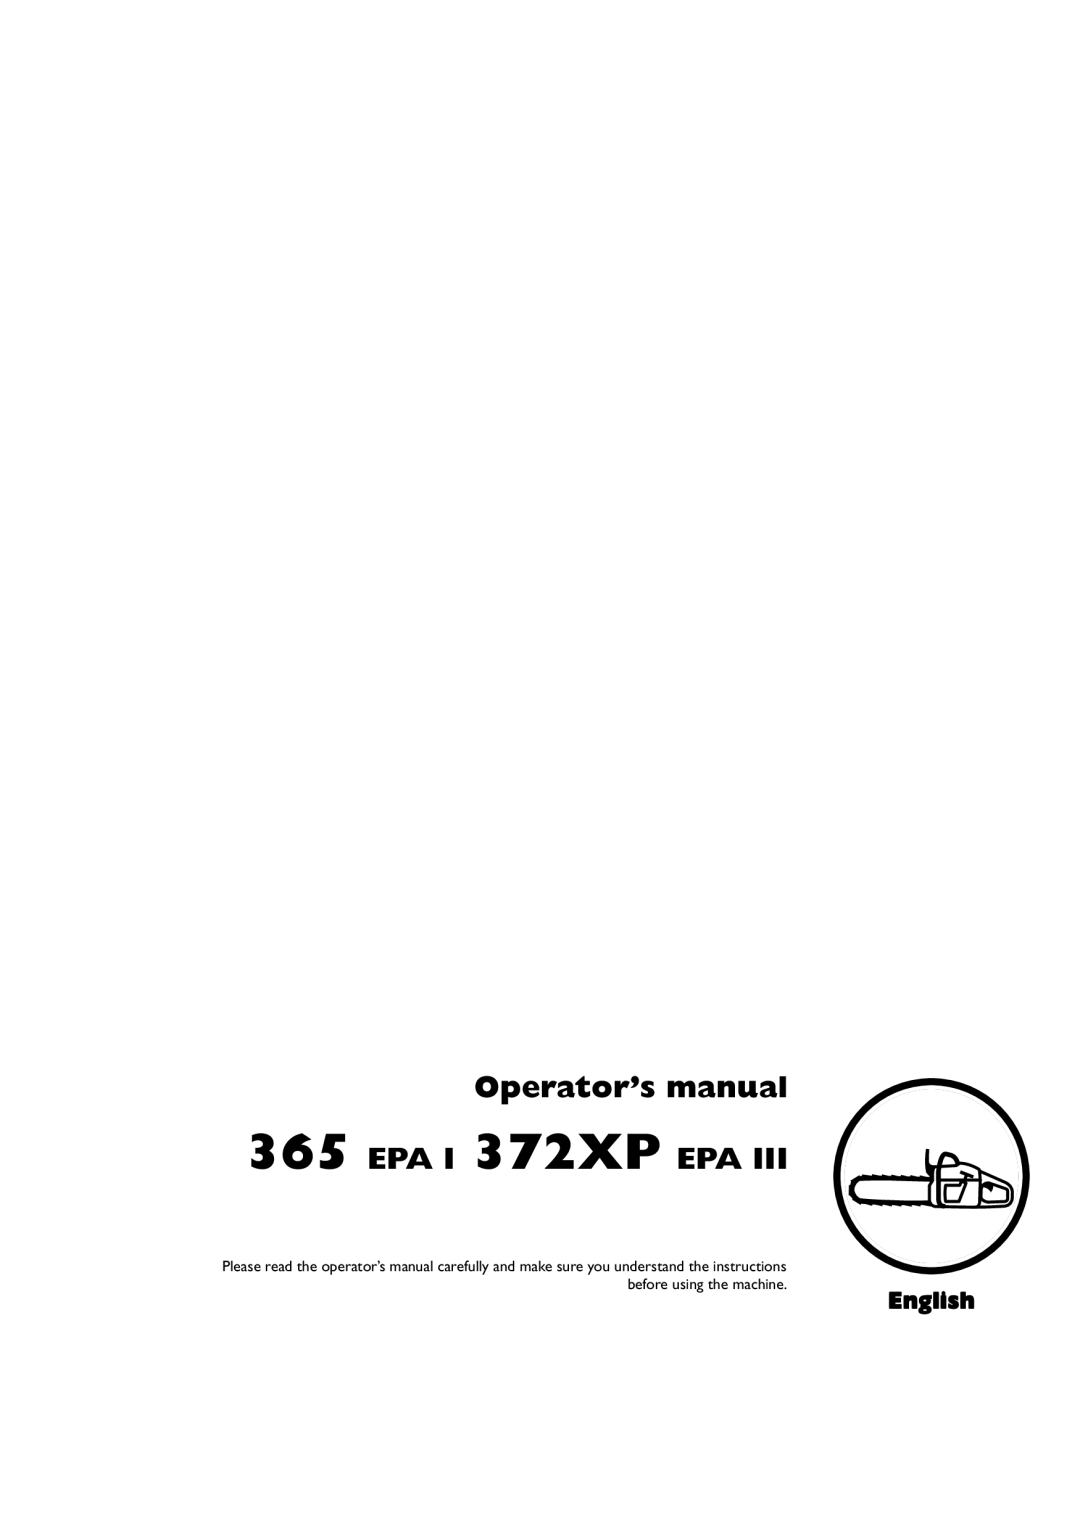 Husqvarna 1151437-95, 372XP EPA III manual Operator’s manual 365 EPA I 372XP EPA, English 